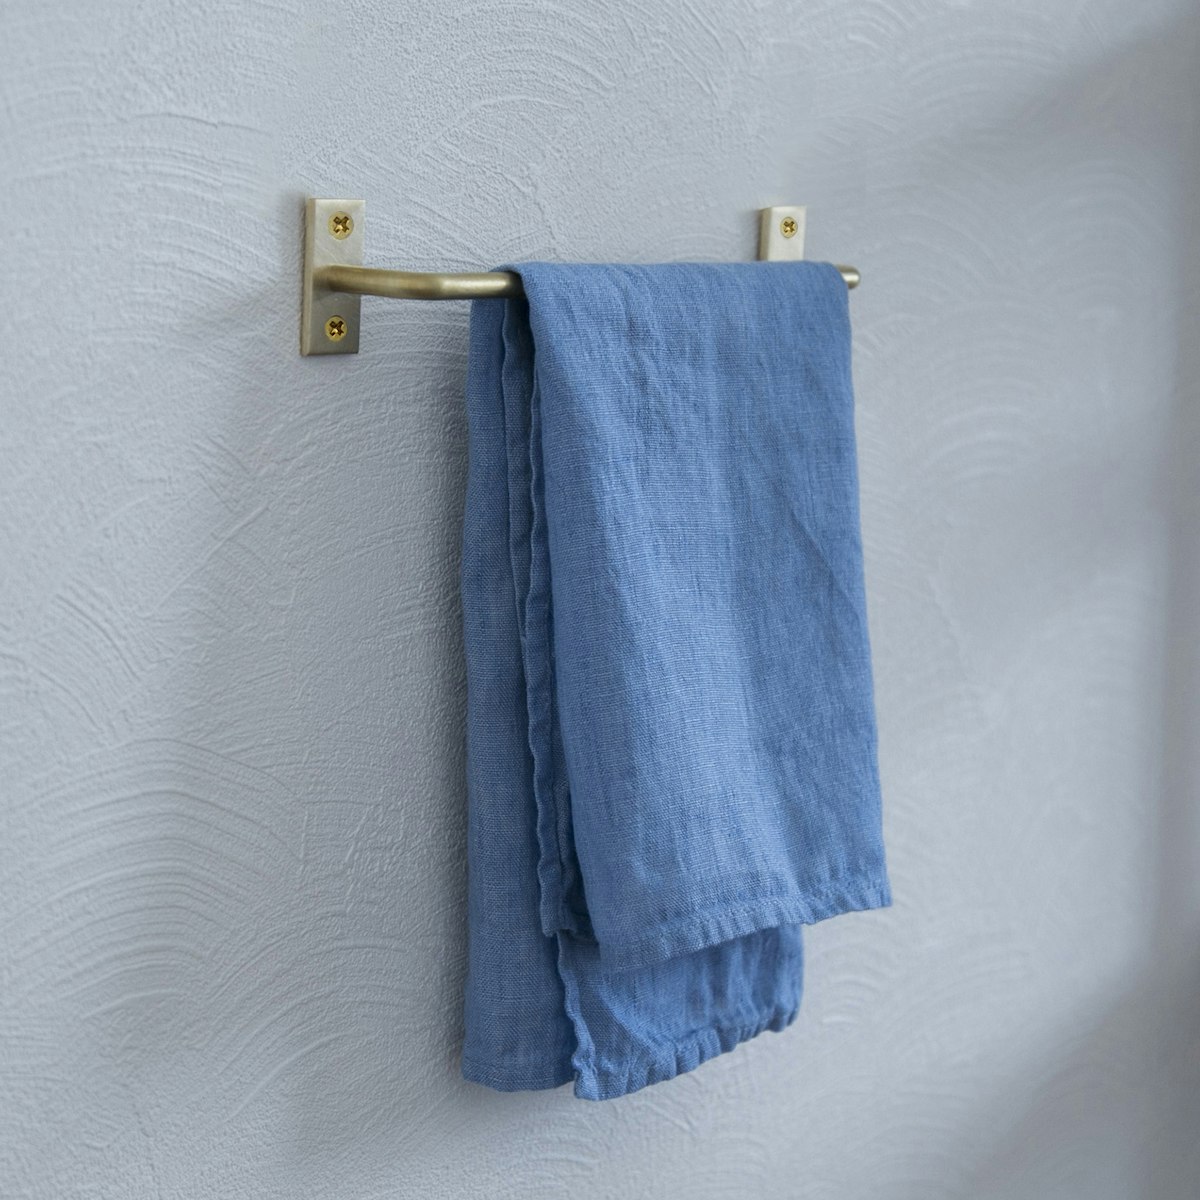 千葉工作所/Towel holder Brass（タオルホルダー 真鍮）S